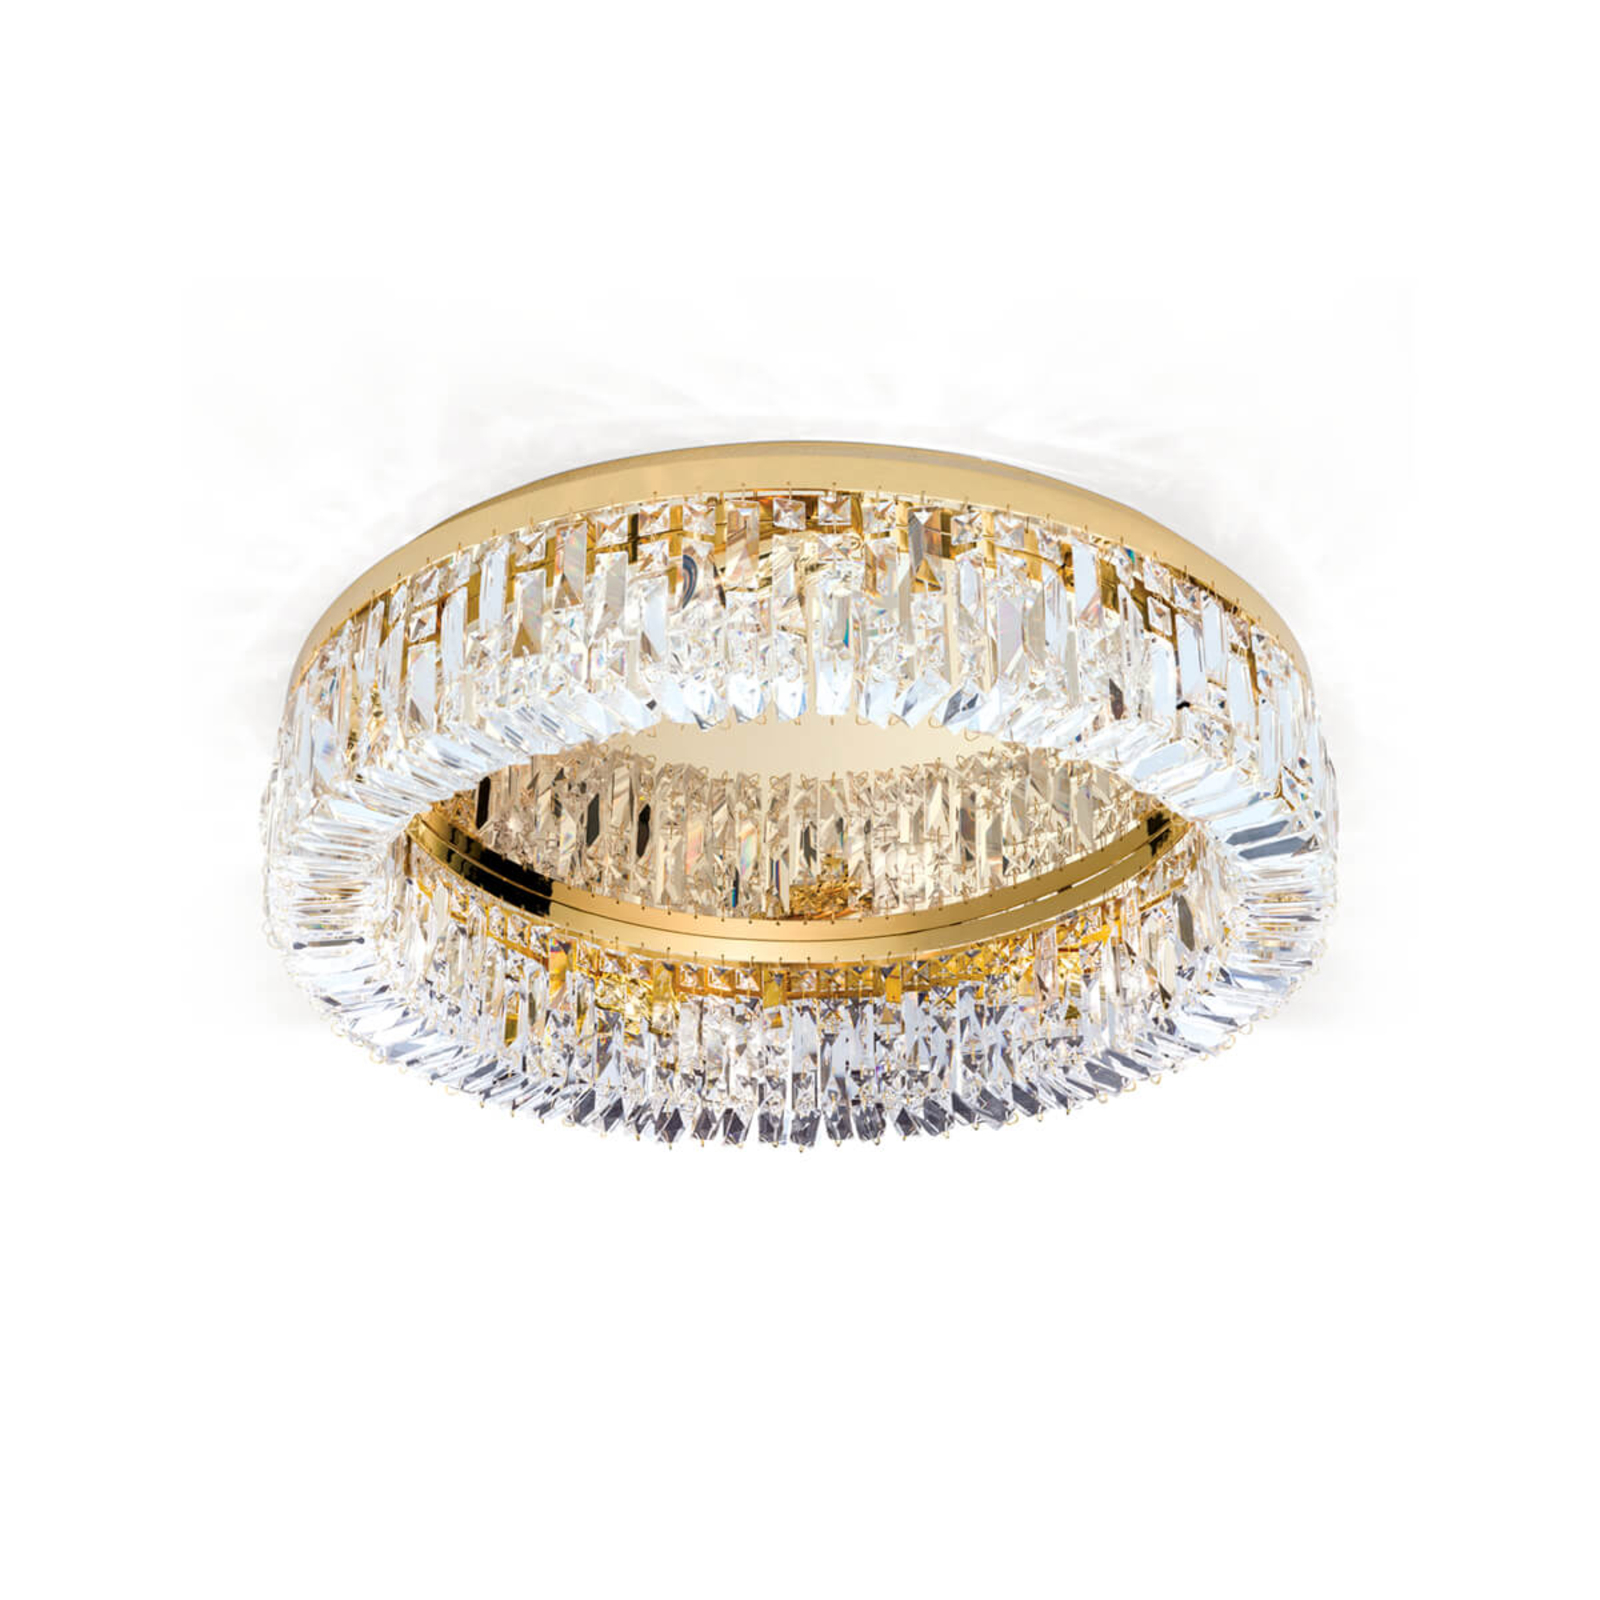 Kristály mennyezeti lámpagyűrű - 59 cm